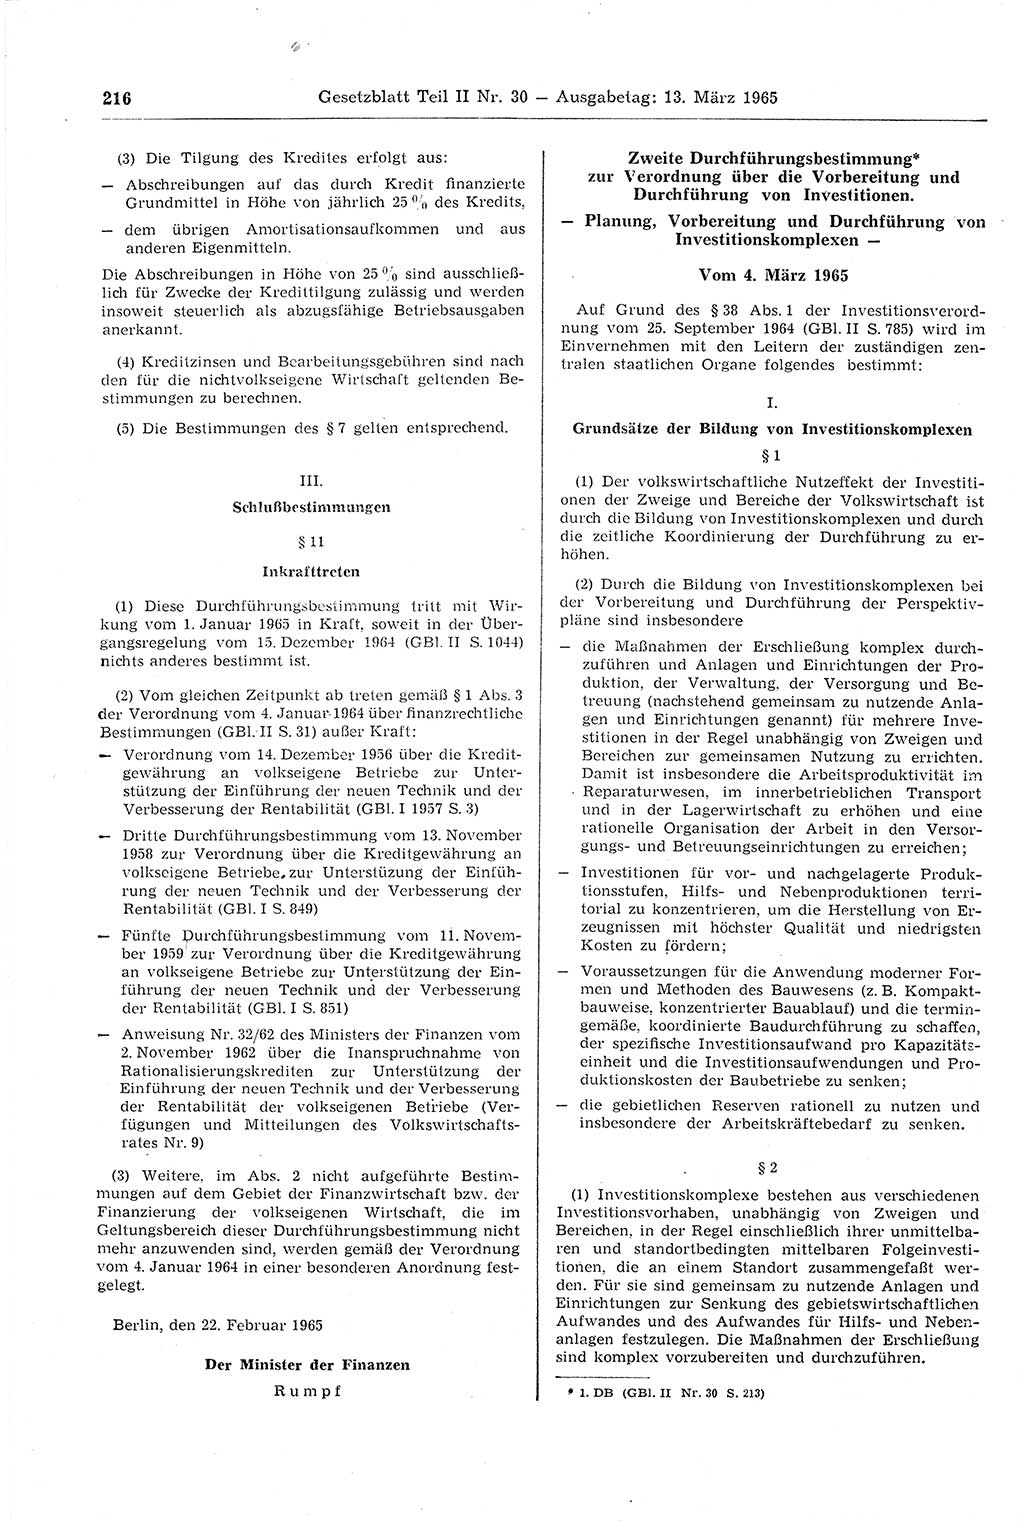 Gesetzblatt (GBl.) der Deutschen Demokratischen Republik (DDR) Teil ⅠⅠ 1965, Seite 216 (GBl. DDR ⅠⅠ 1965, S. 216)